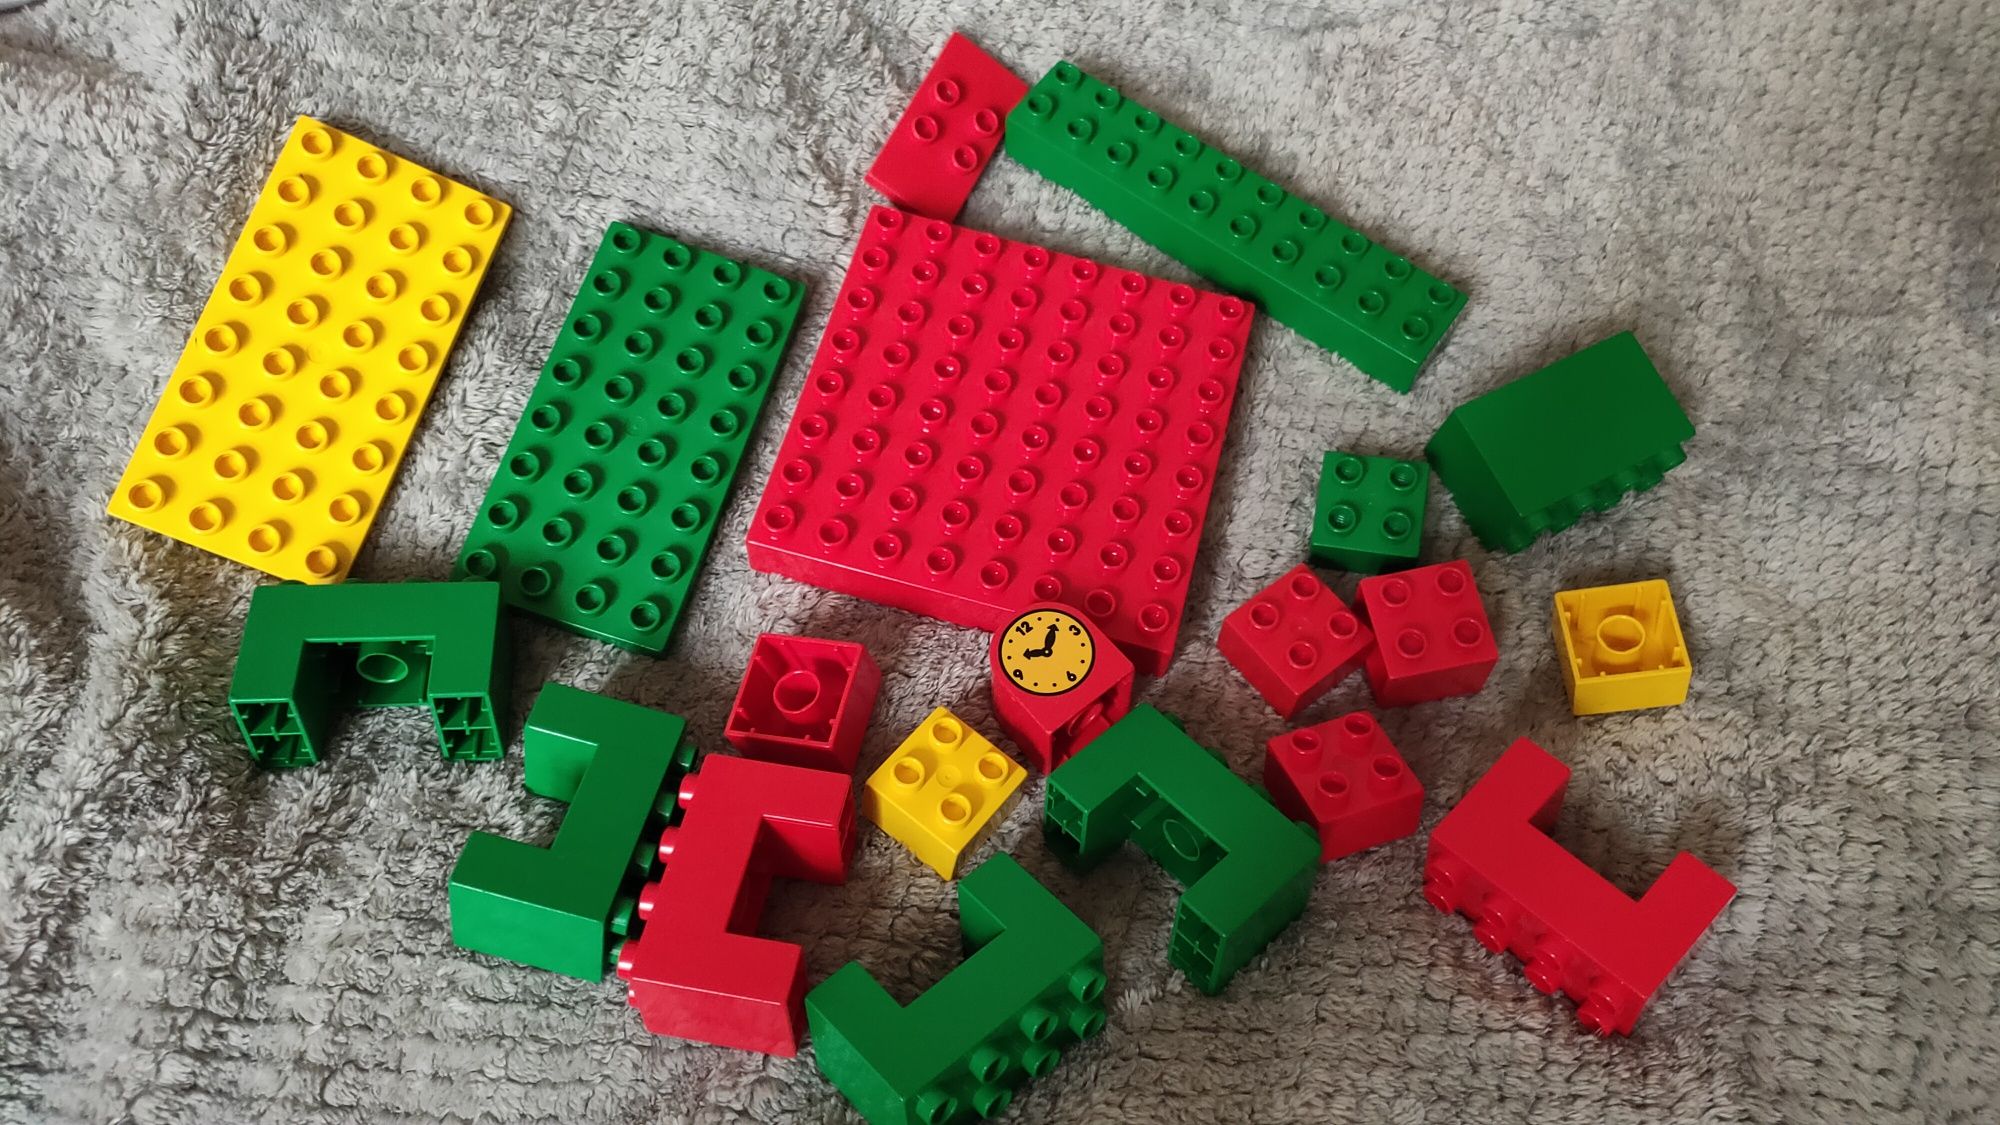 Klocki LEGO Duplo konstrukcyjne